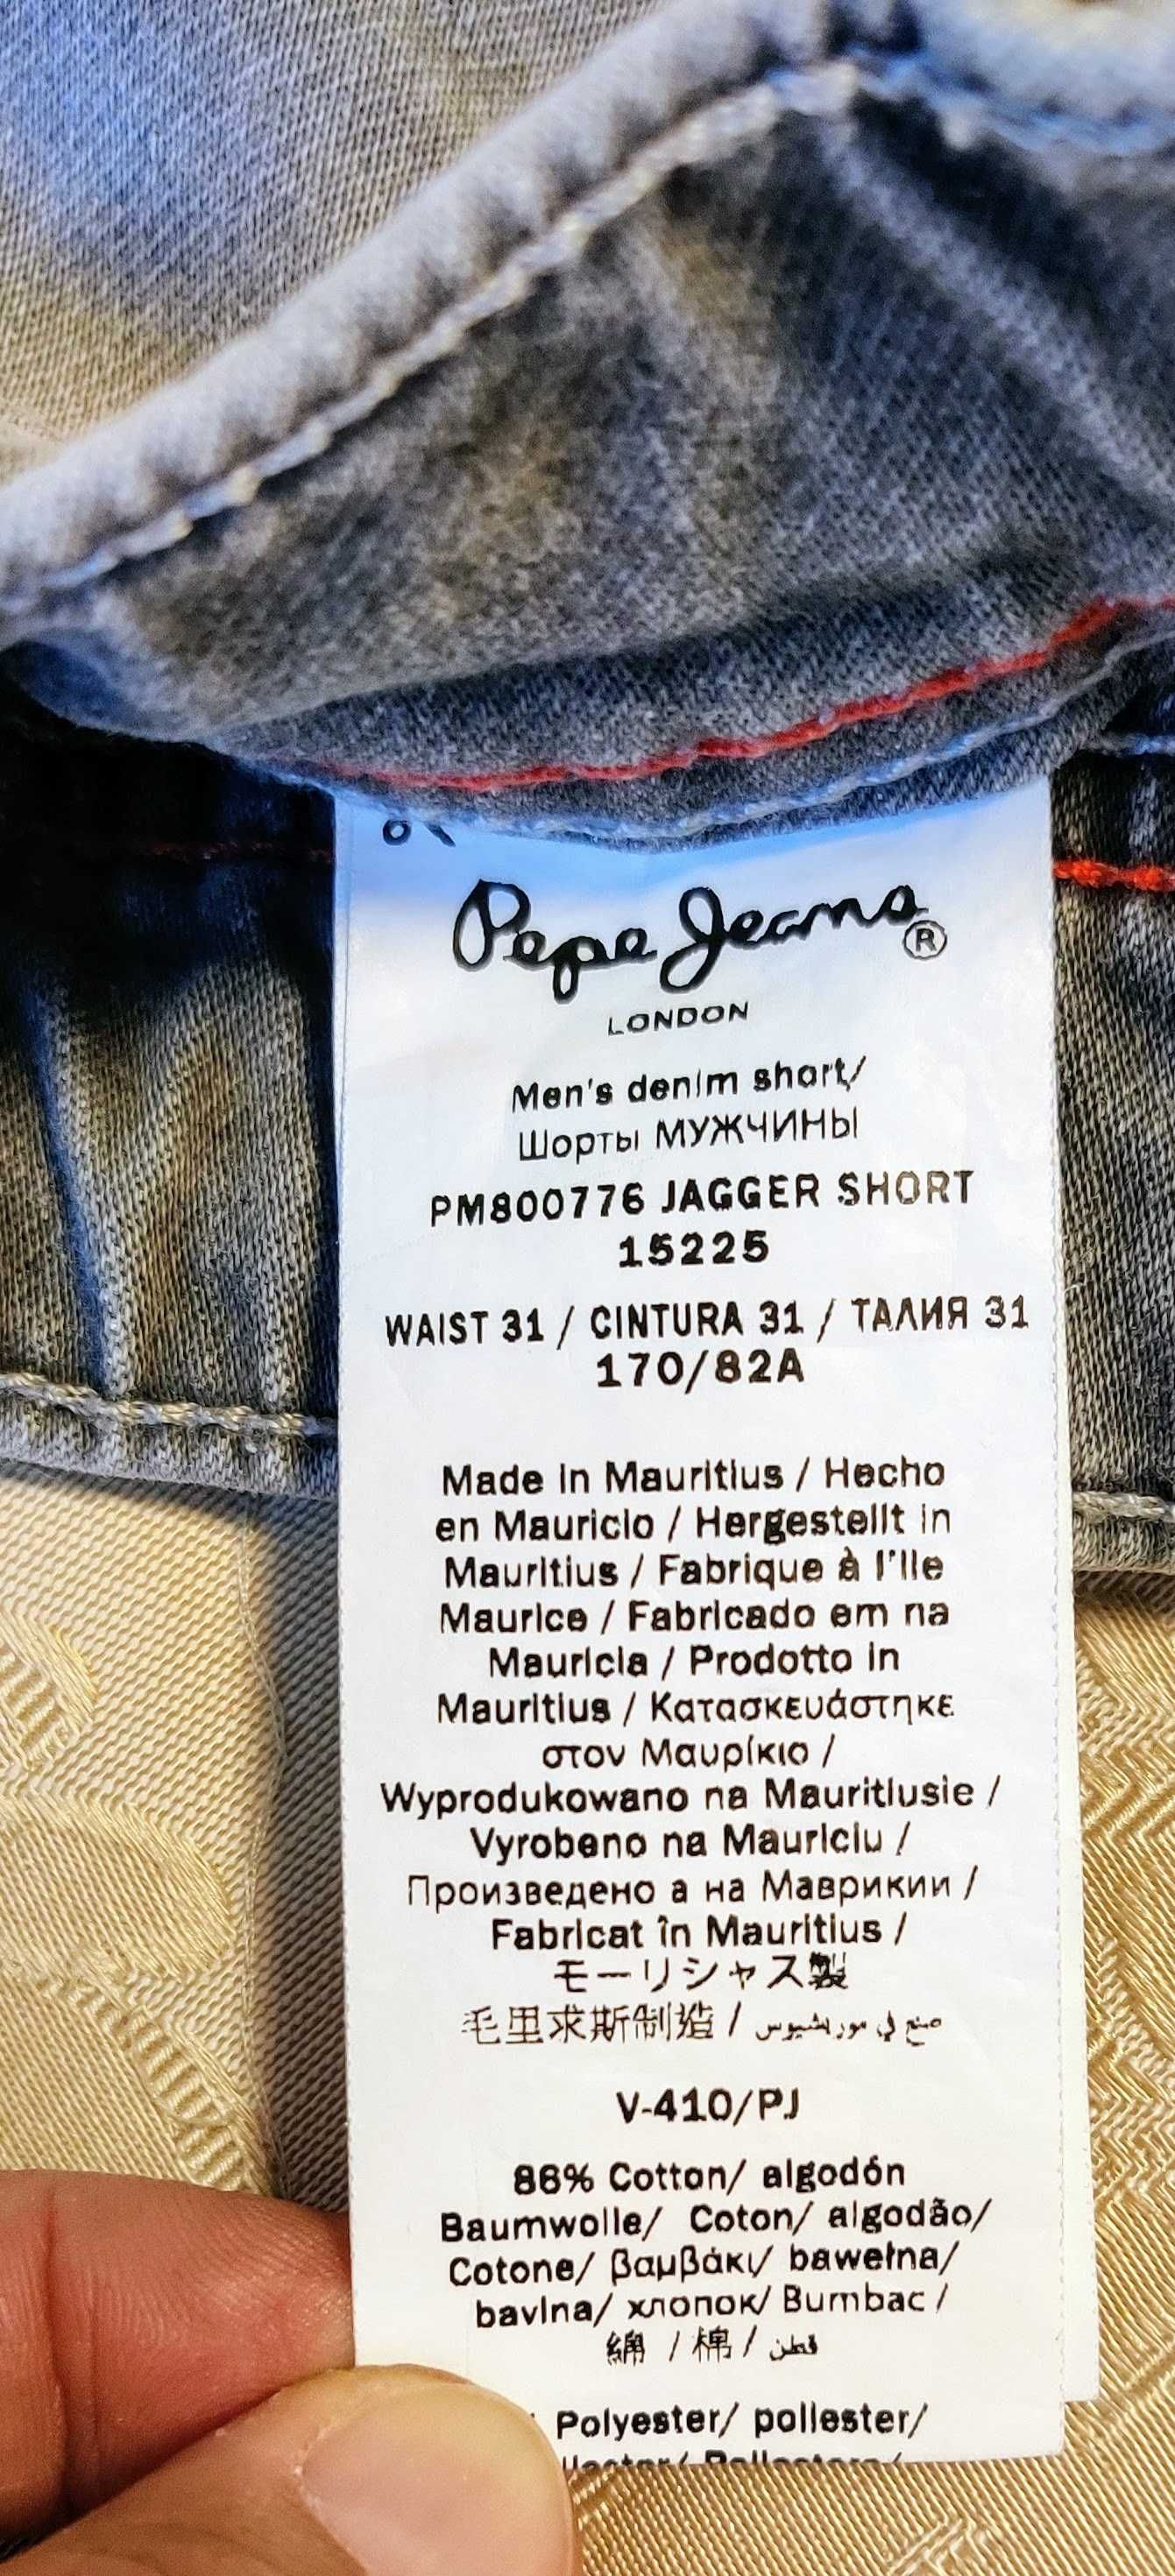 Calções de ganga p/ rapaz marca Pepe Jeans (W31)